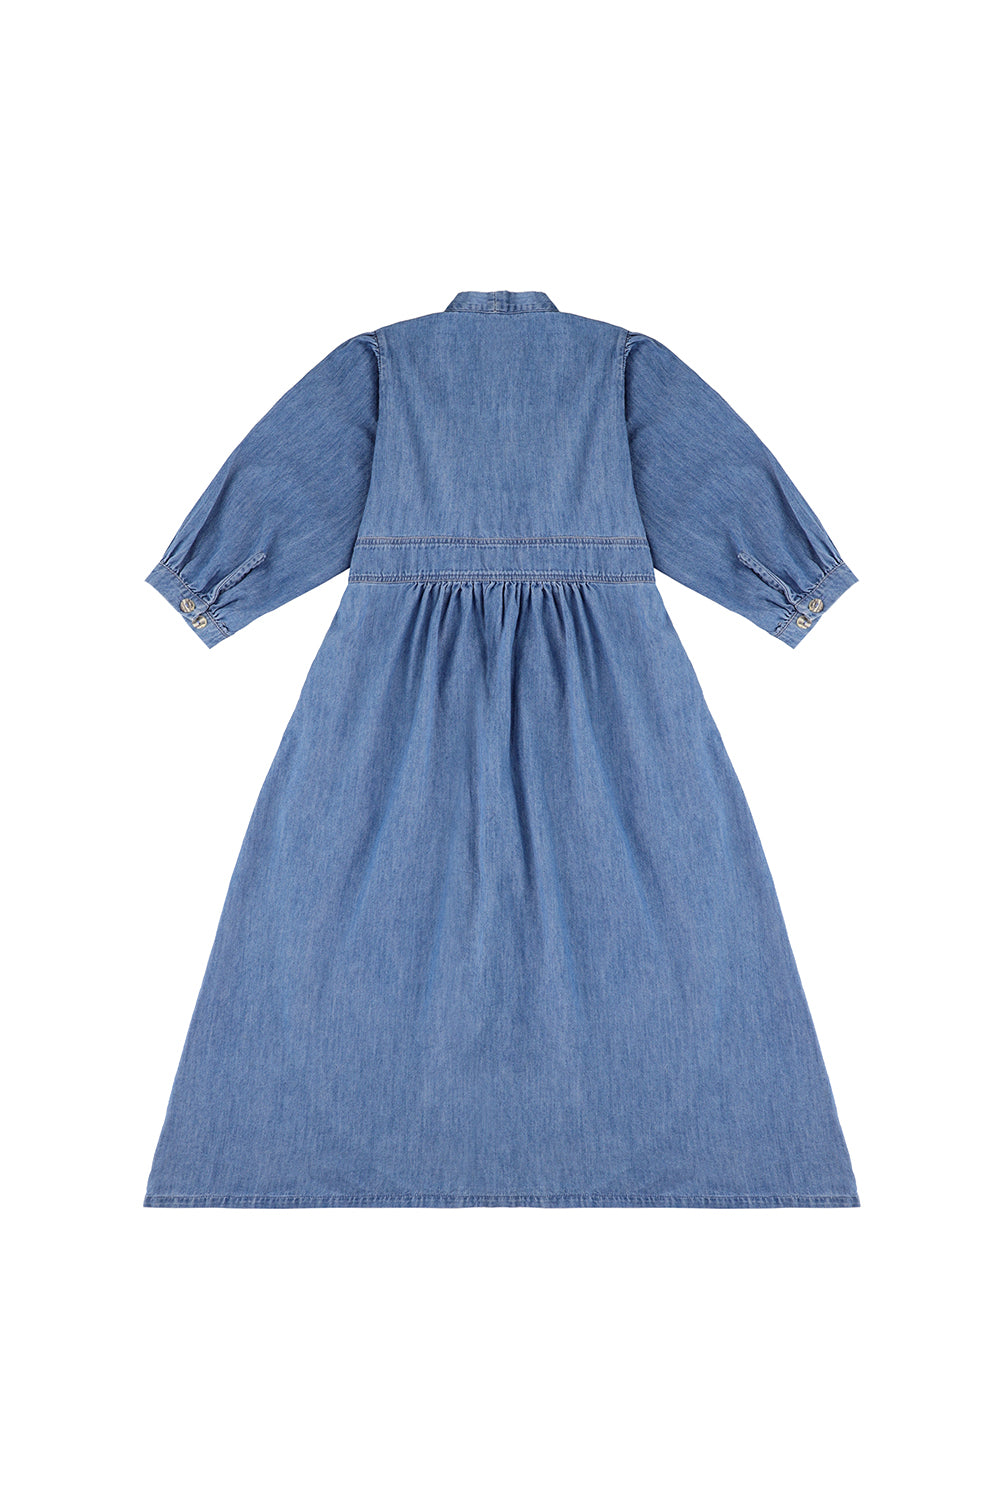 Audrey Dress in Summer Vintage - seventy + mochi